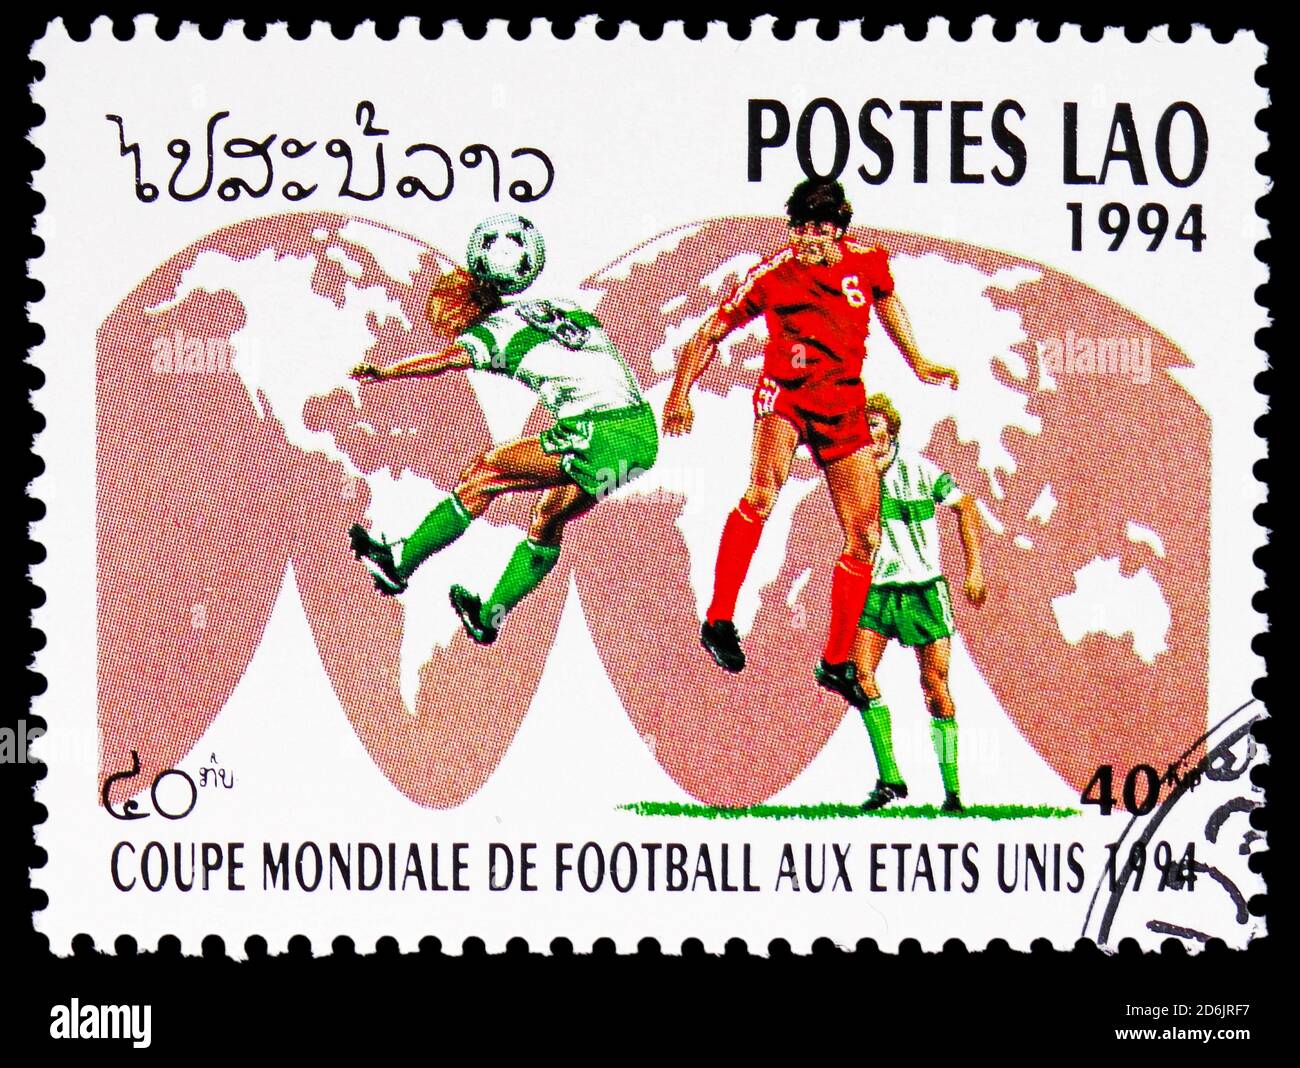 MOSCA, RUSSIA - 10 SETTEMBRE 2020: Francobollo stampato in Laos mostra i giocatori di calcio sulla mappa del mondo, FIFA World Cup Football Championship 1994, USA s Foto Stock